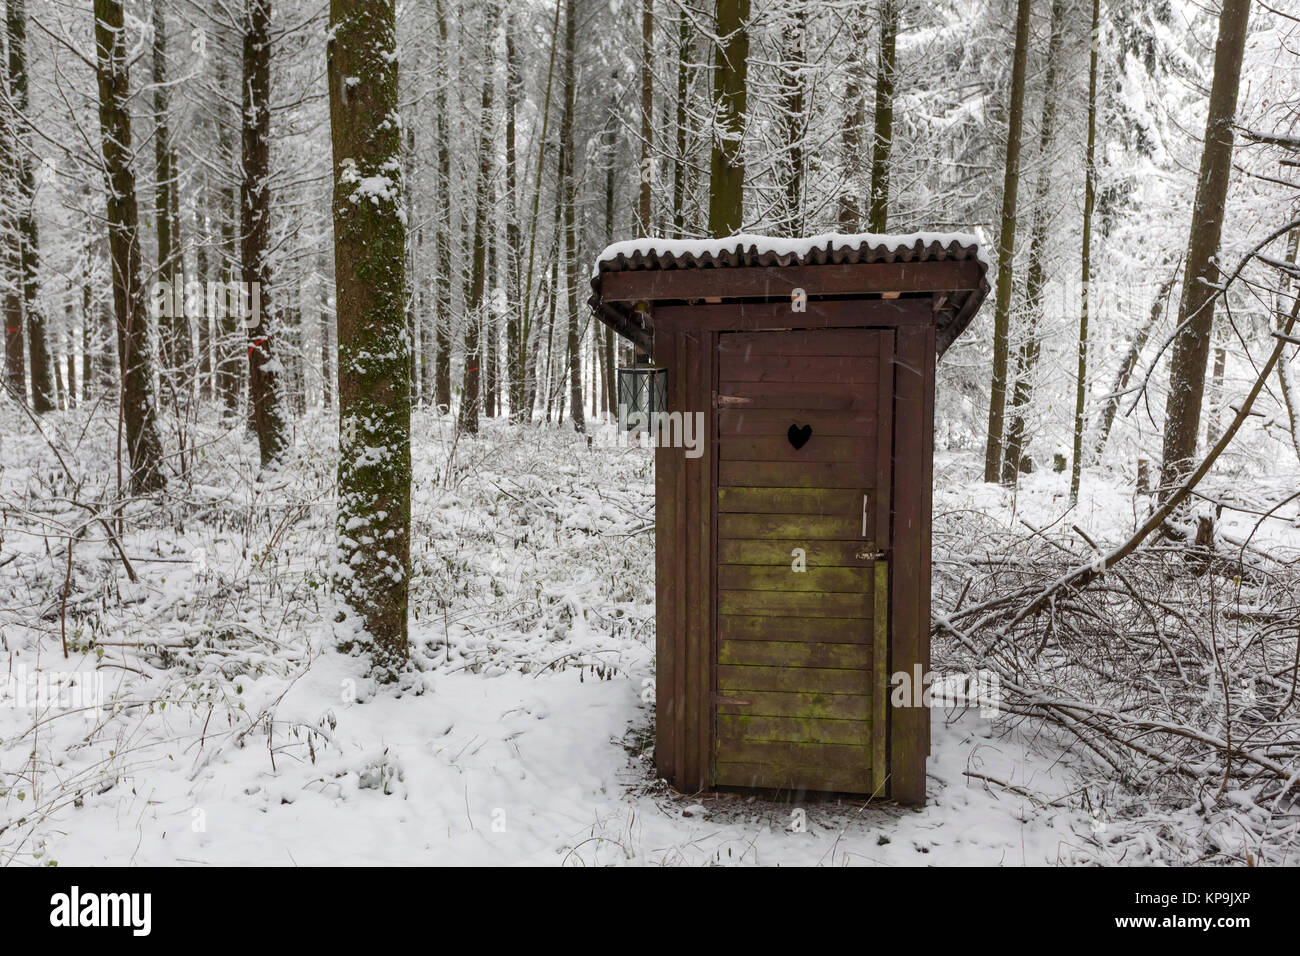 Toilettes extérieur en bois dans une forêt hiver neige Banque D'Images